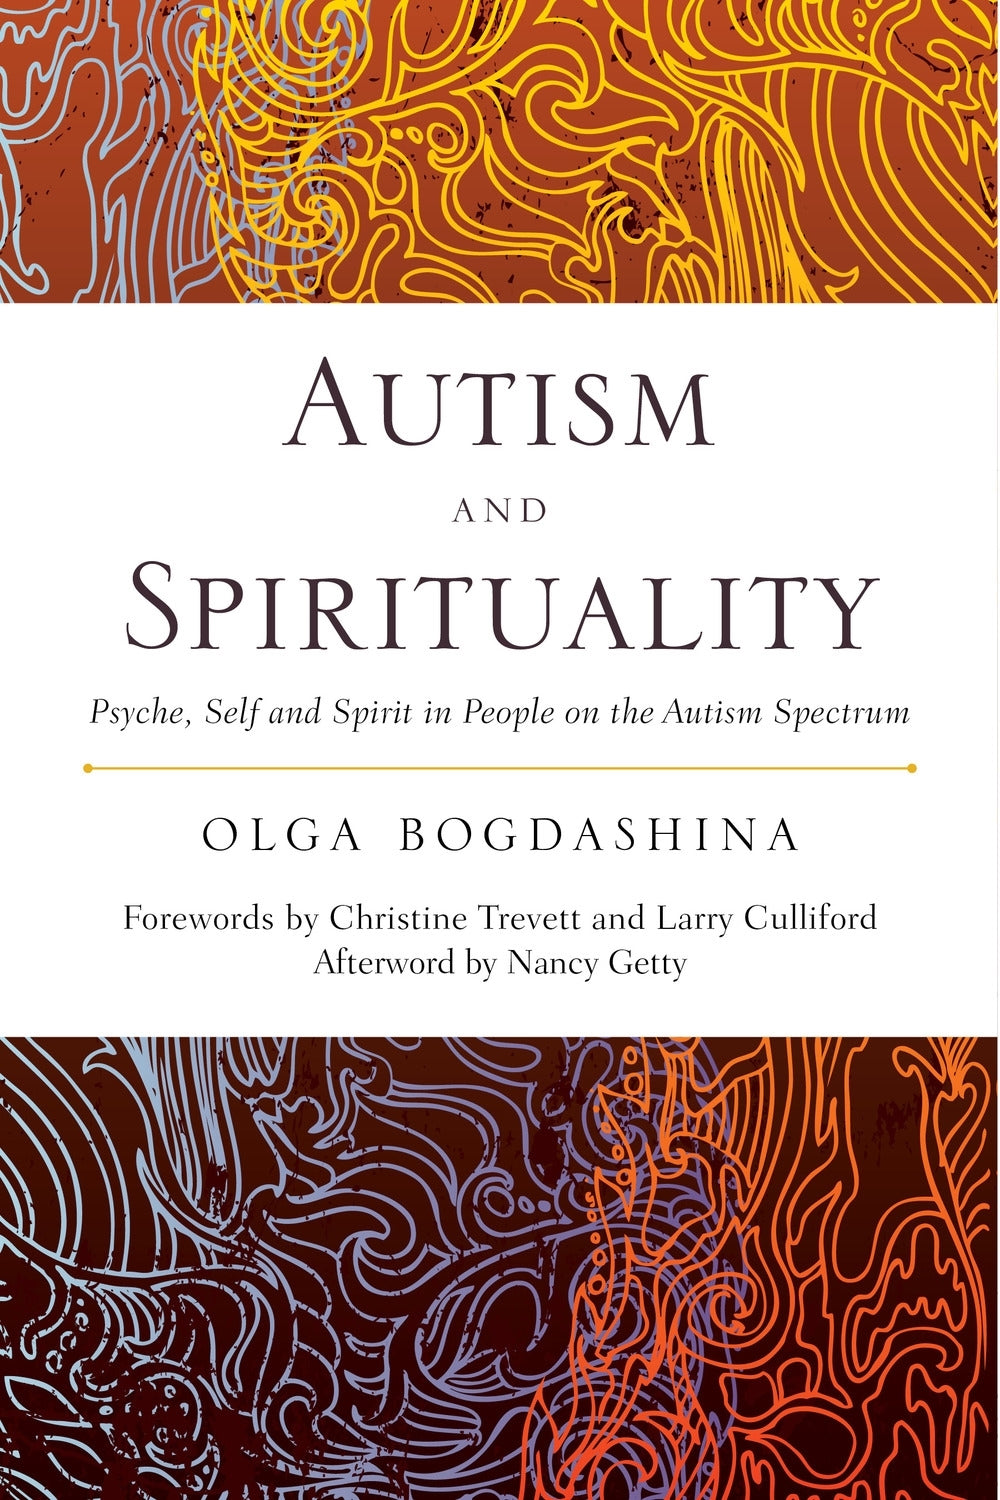 Autism and Spirituality by Olga Bogdashina